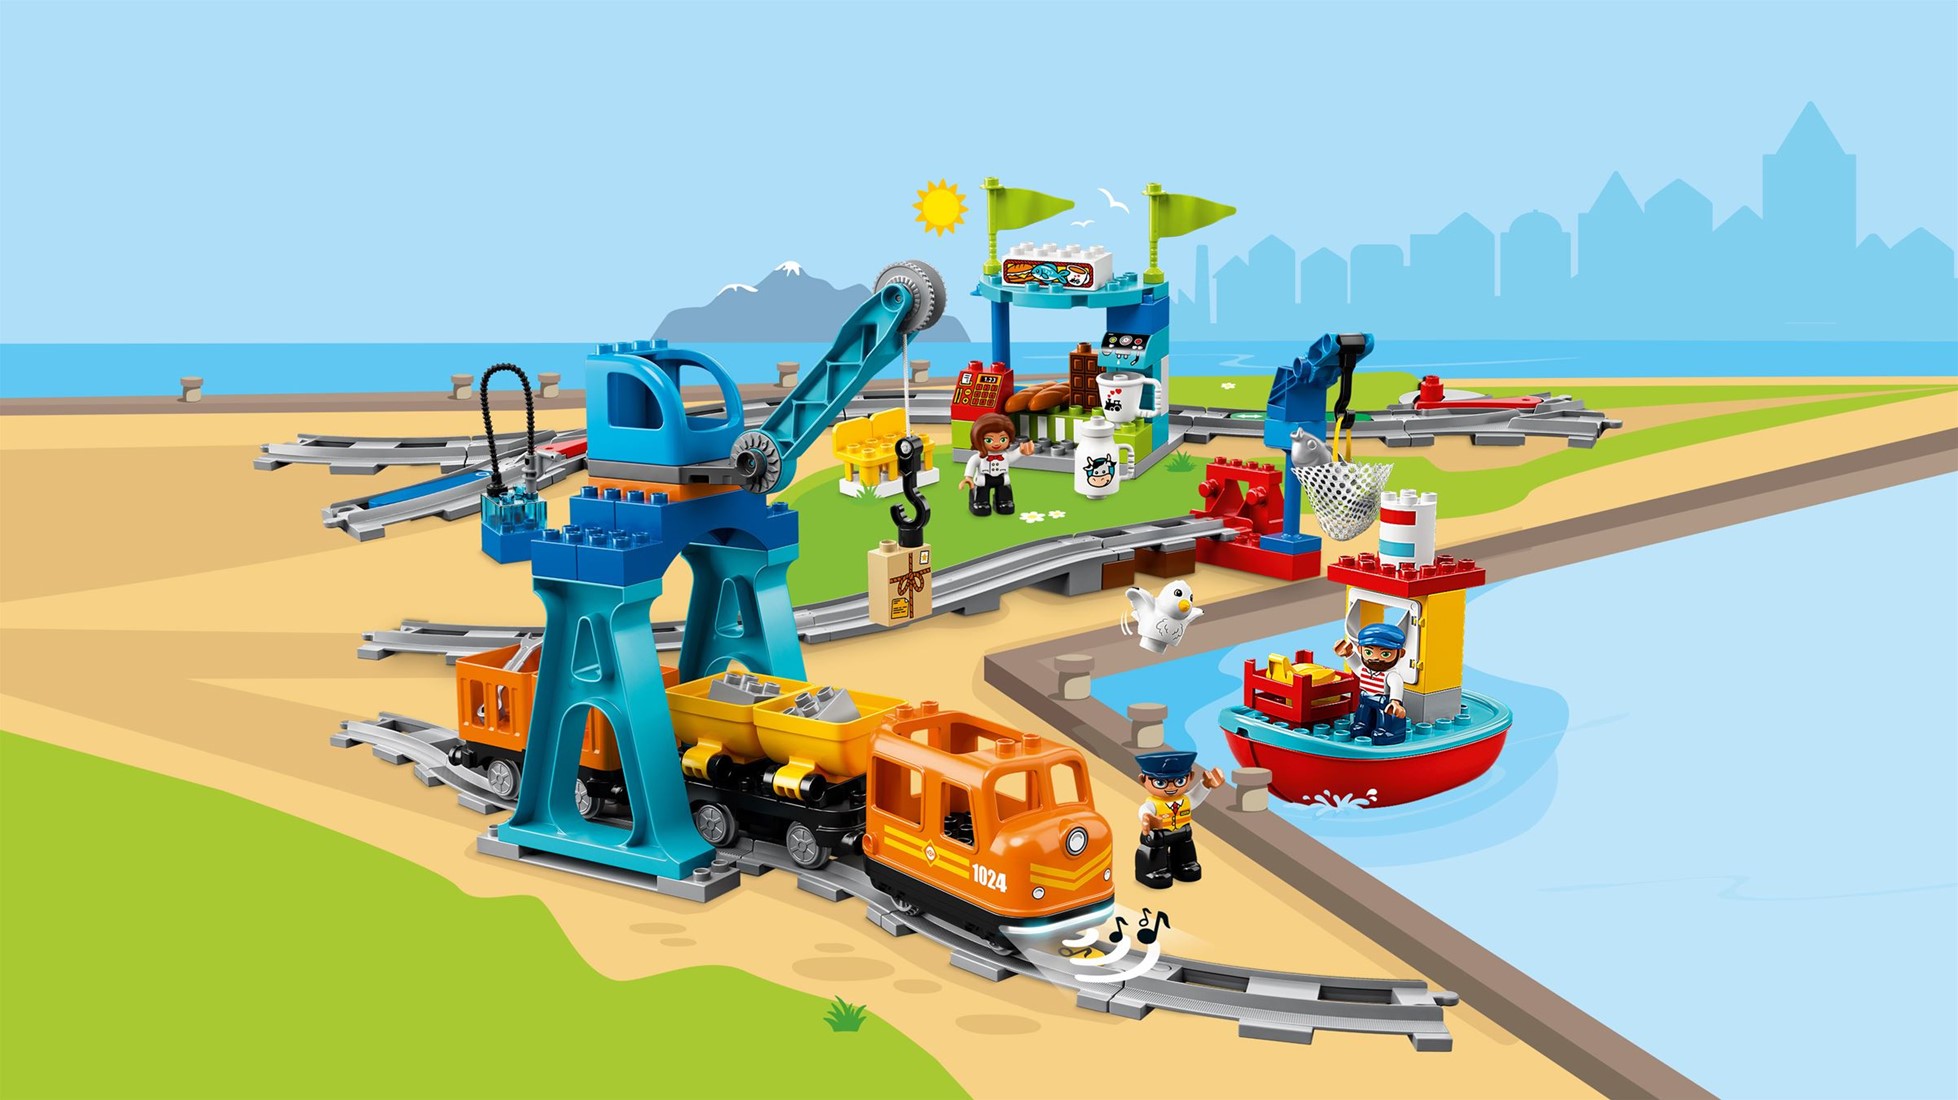 Petit train Duplo avec un personnage – Lego